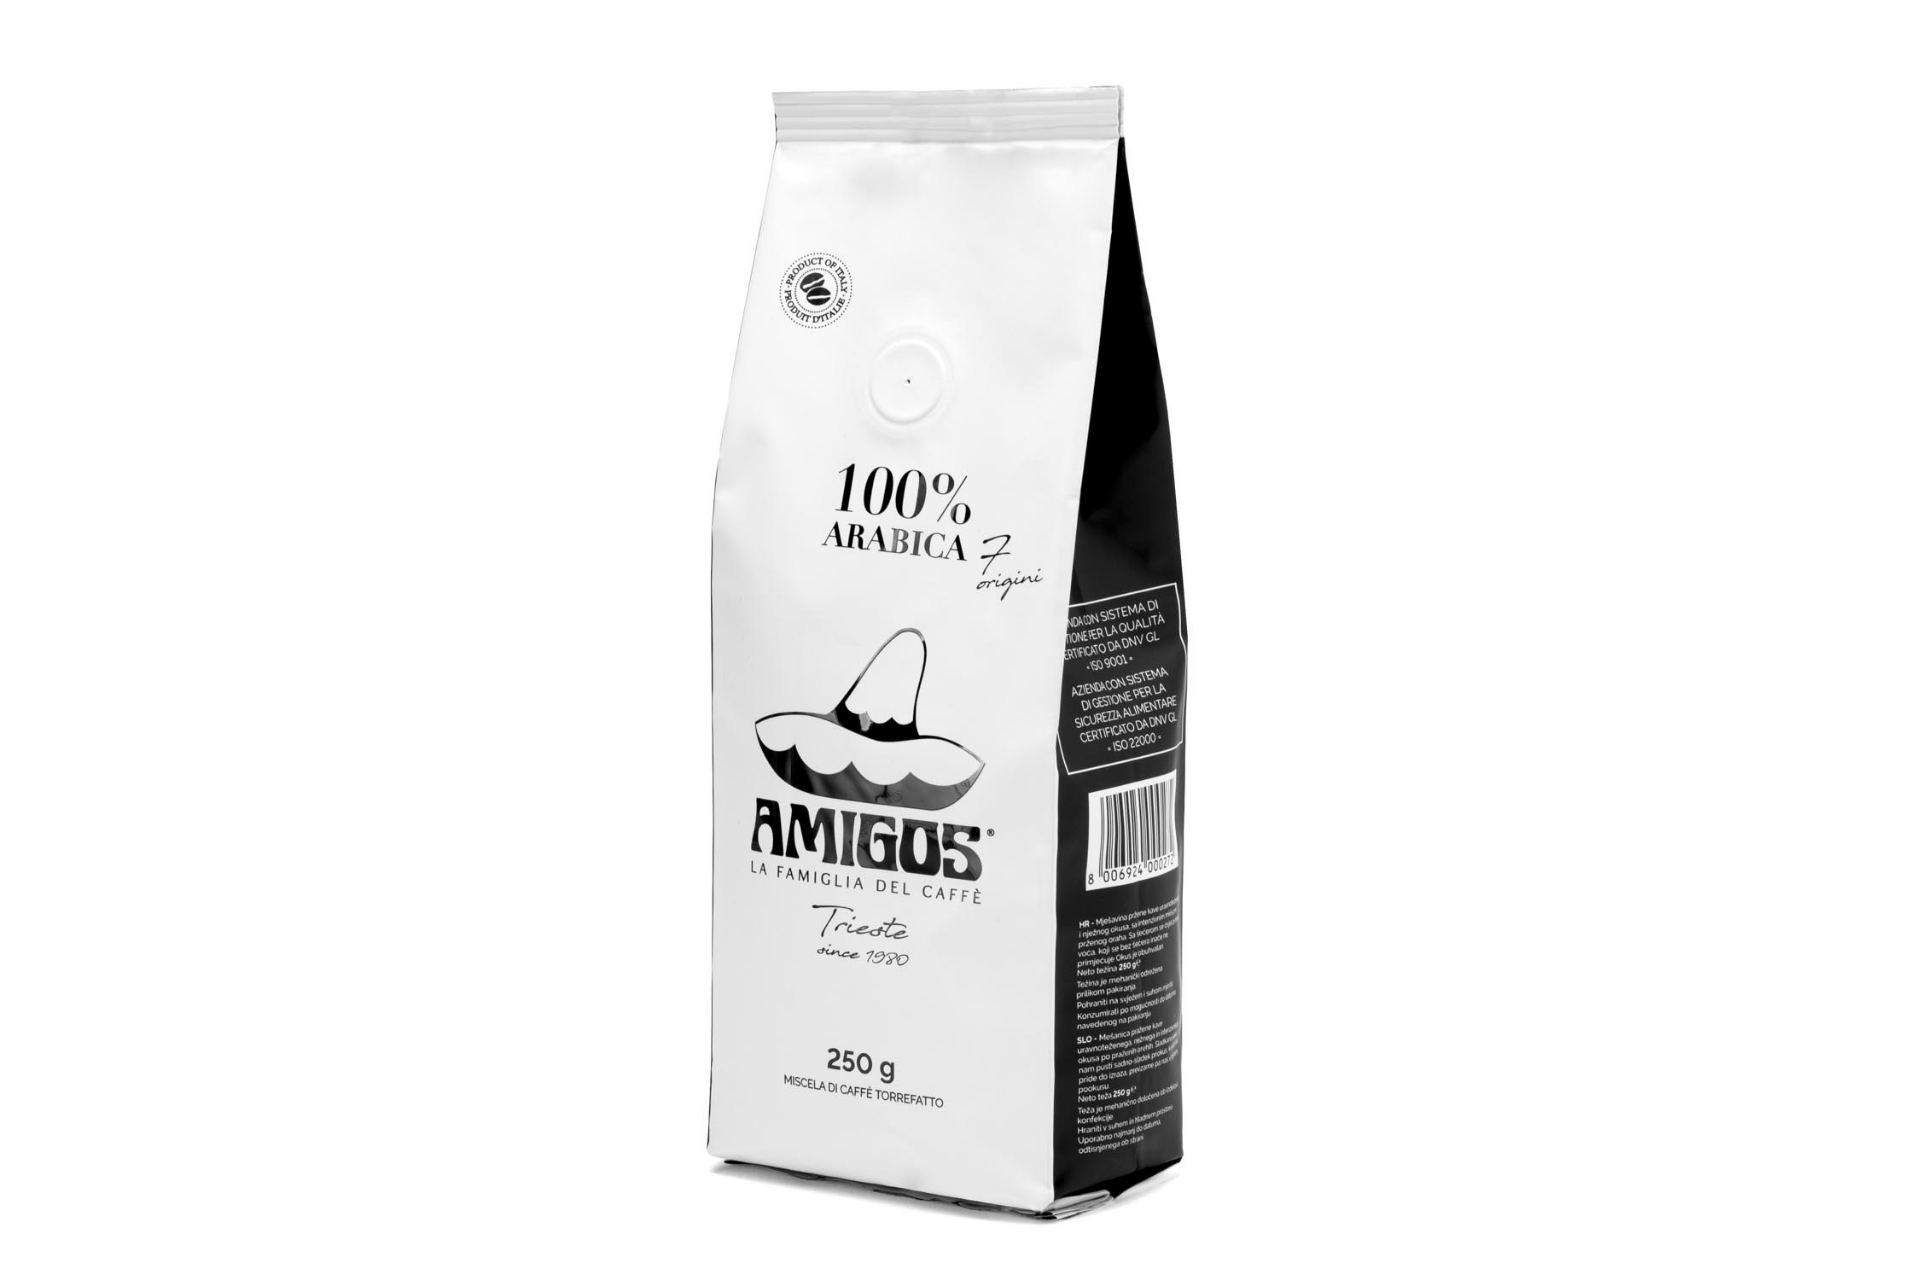 7 Origini 100% arabica coffee beans